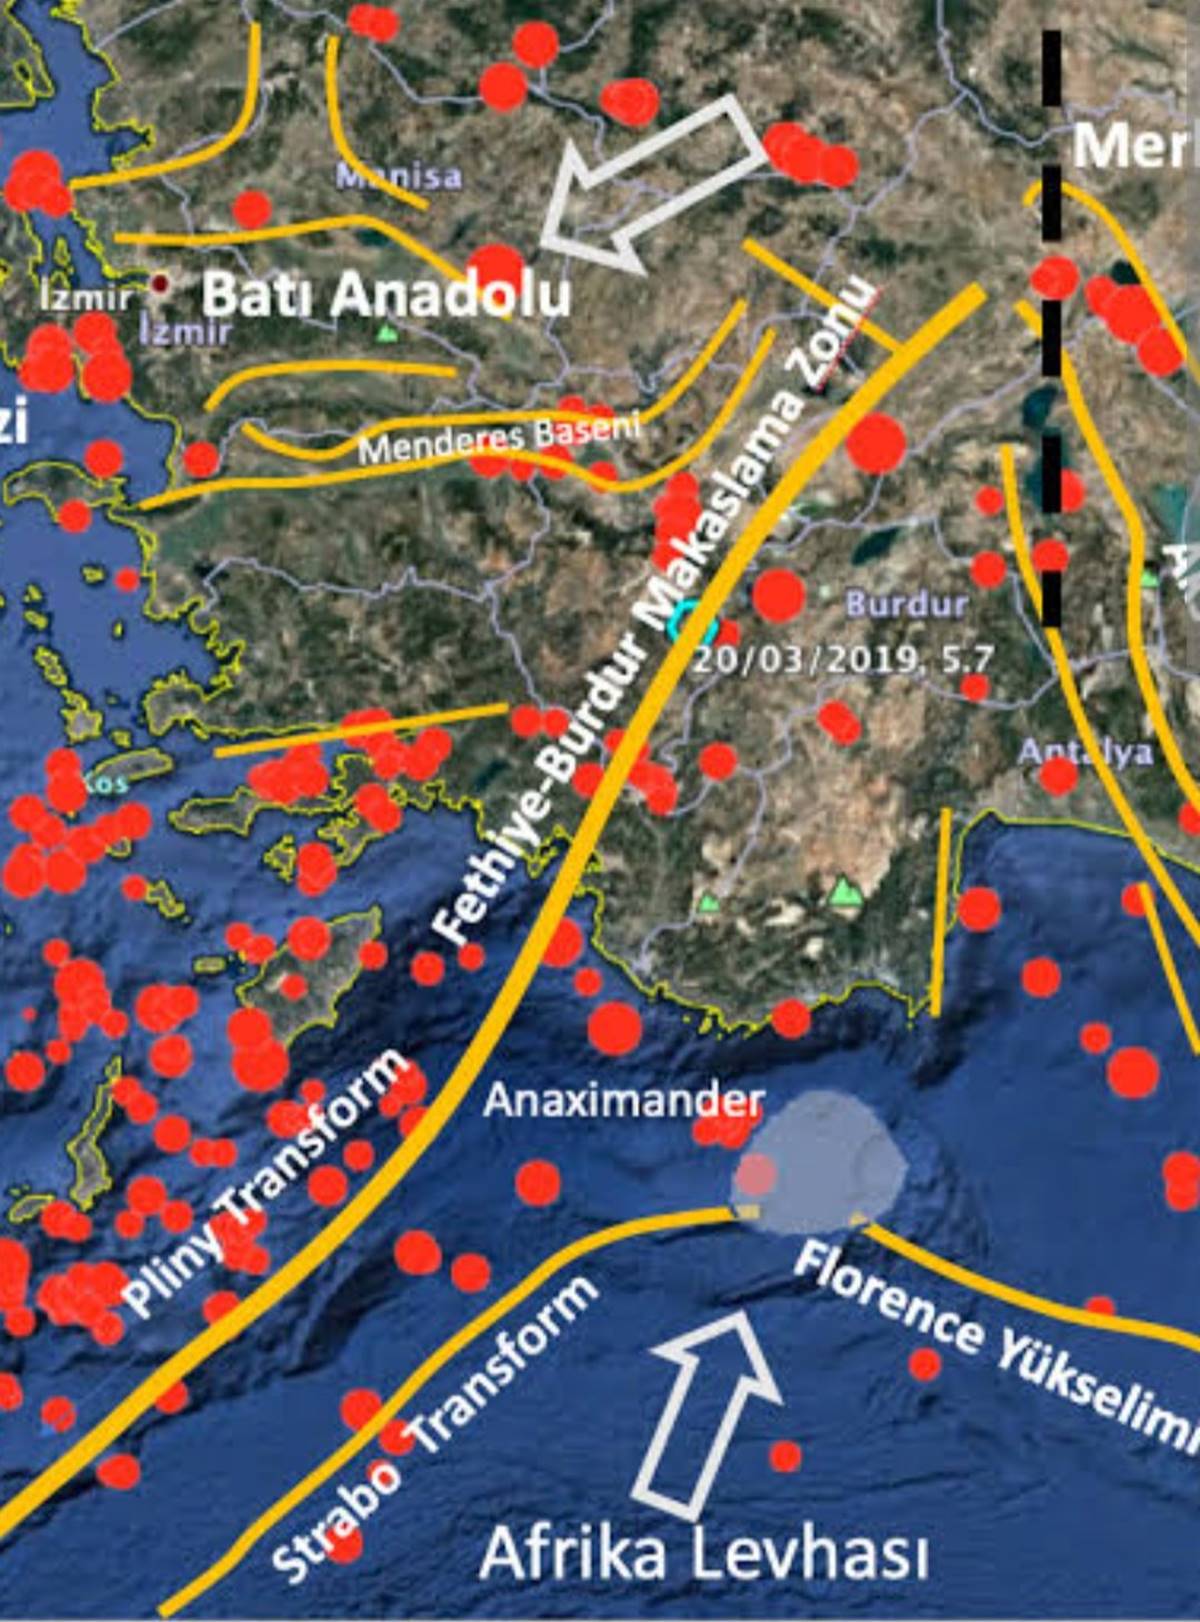 burdur-deprem-fay-haritasi.jpg